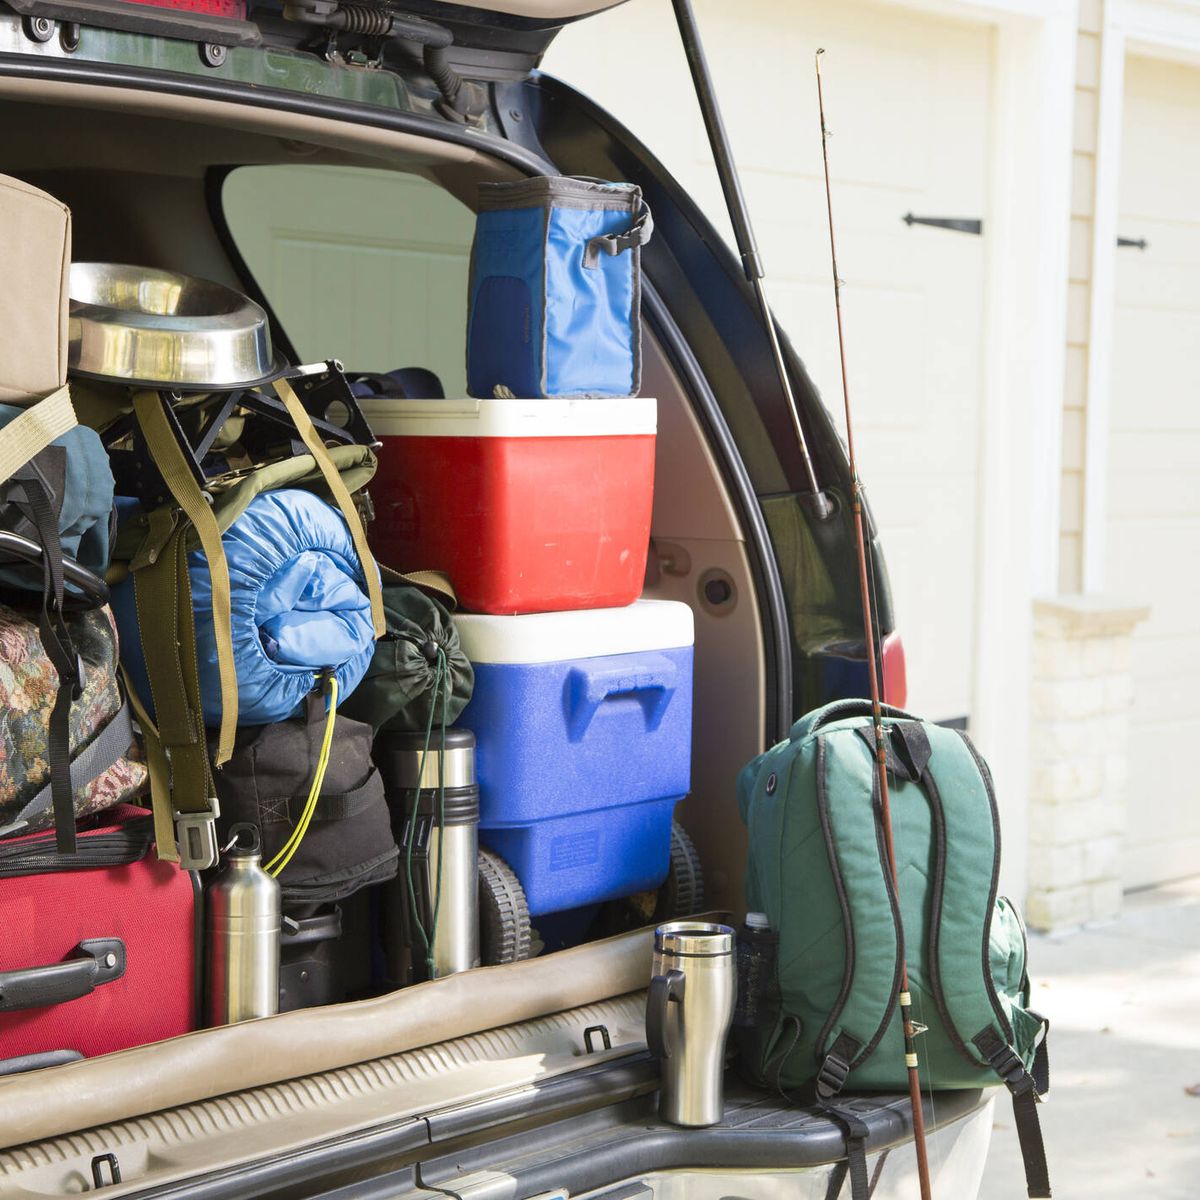 Mover cajas y maletas en el maletero del coche al aire libre